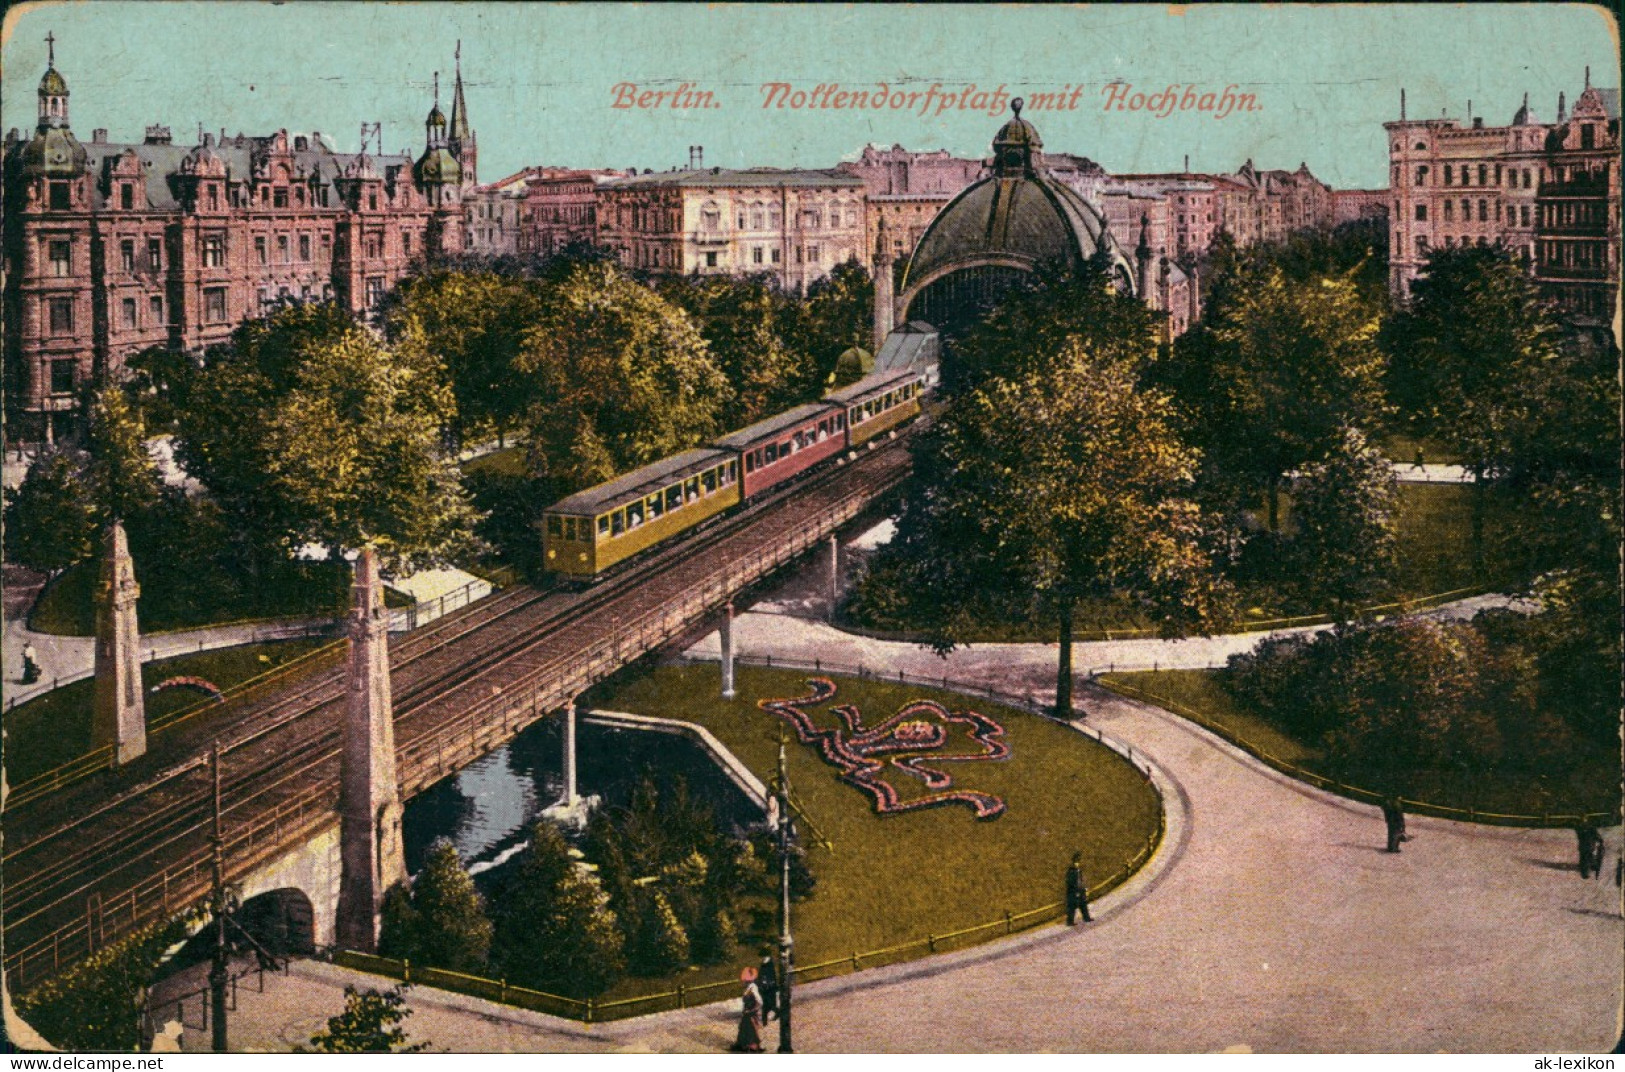 Ansichtskarte Schöneberg-Berlin Nollendorfplatz Hochbahn 1916 - Schoeneberg